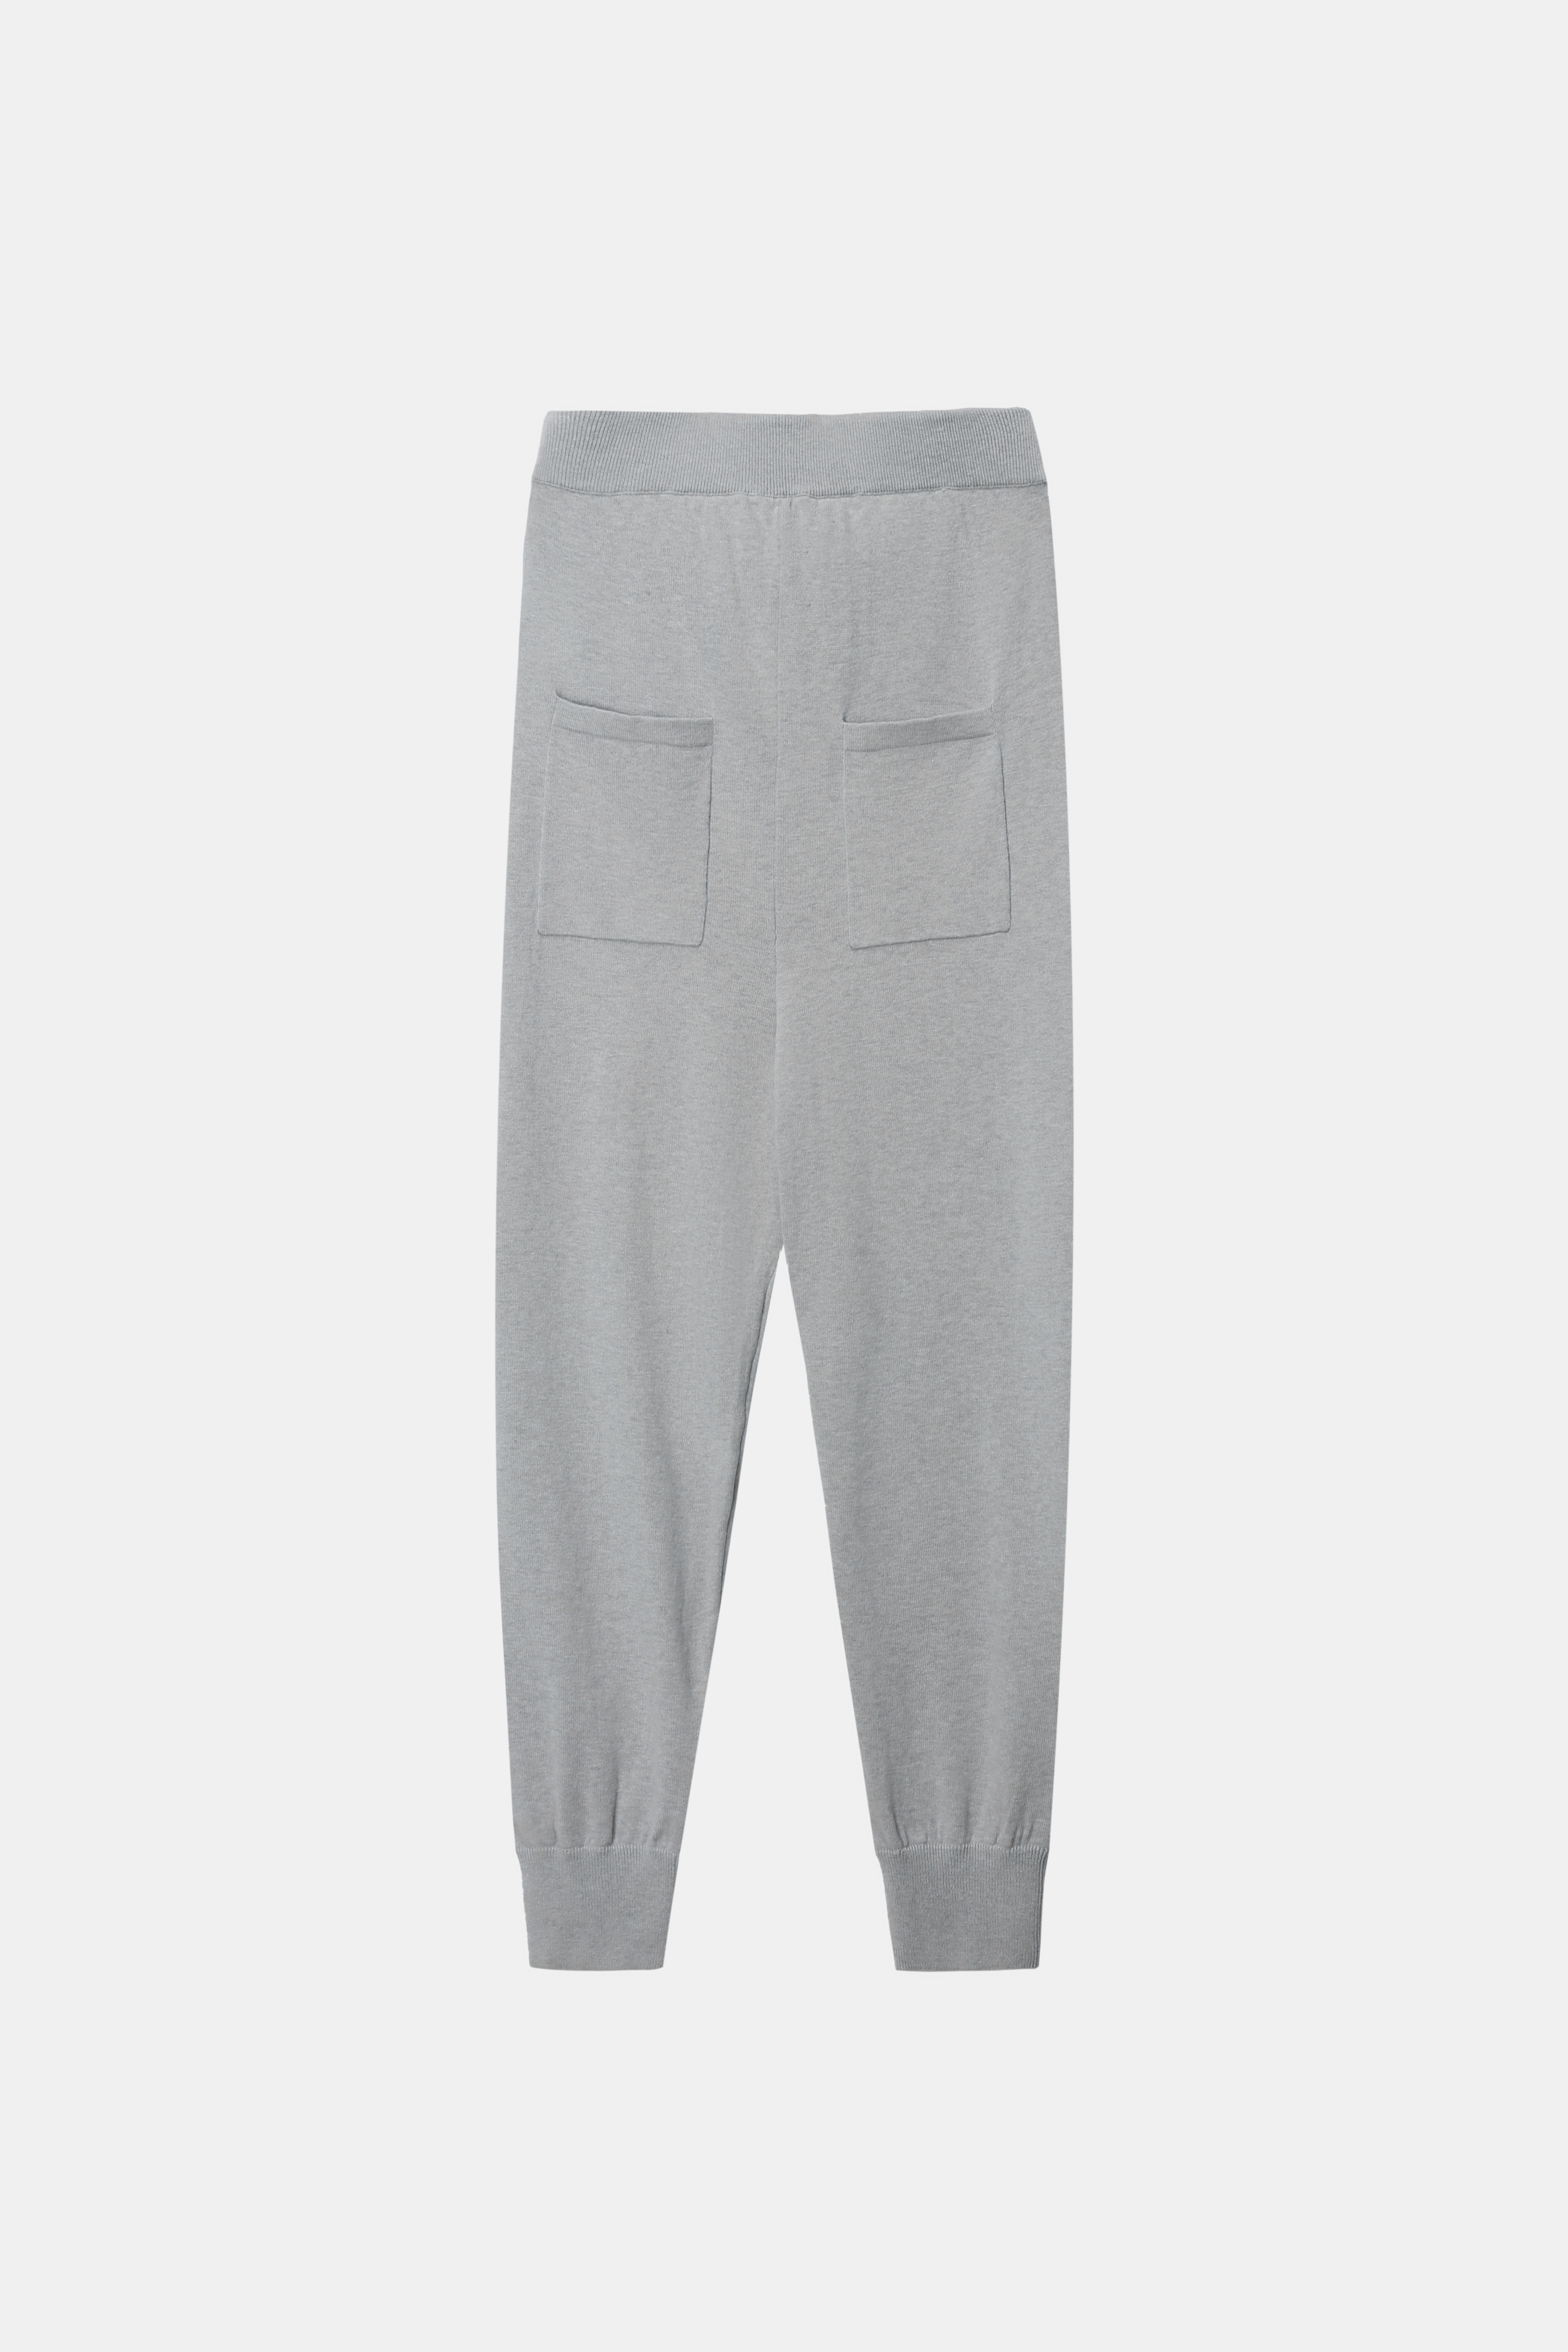 Pantaloni grigi maschili con tasche